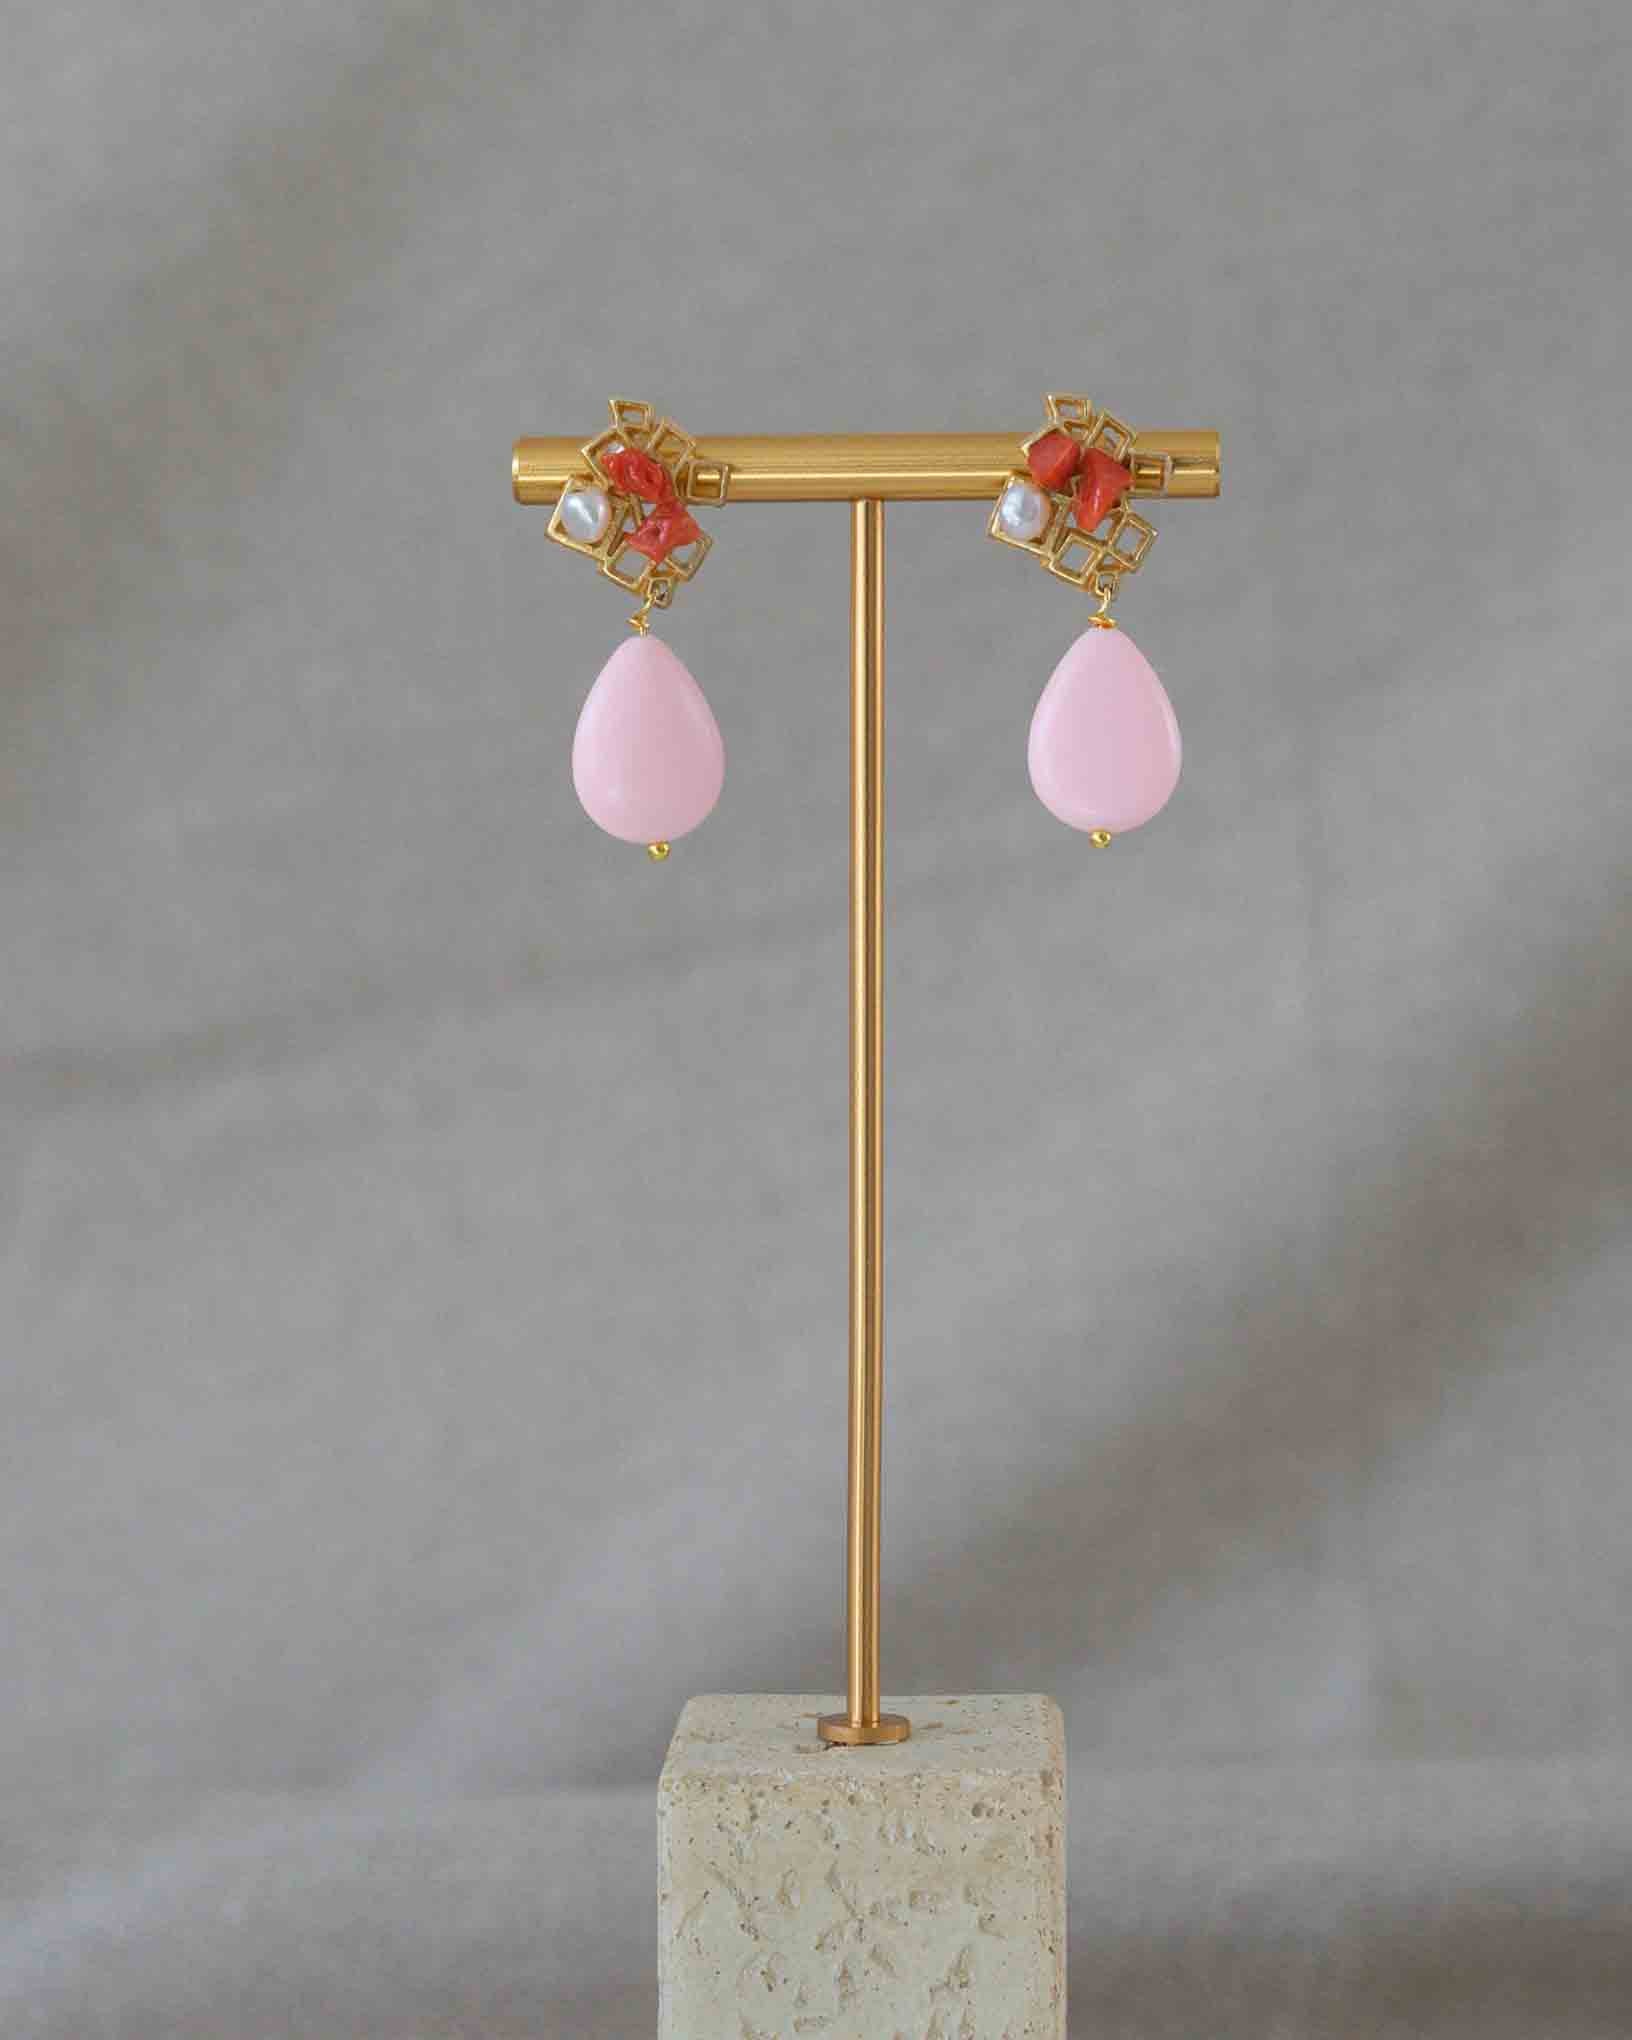 Ohrring Solano aus der Kollektion Perle e Coralli von Donna Rachele Jewelry